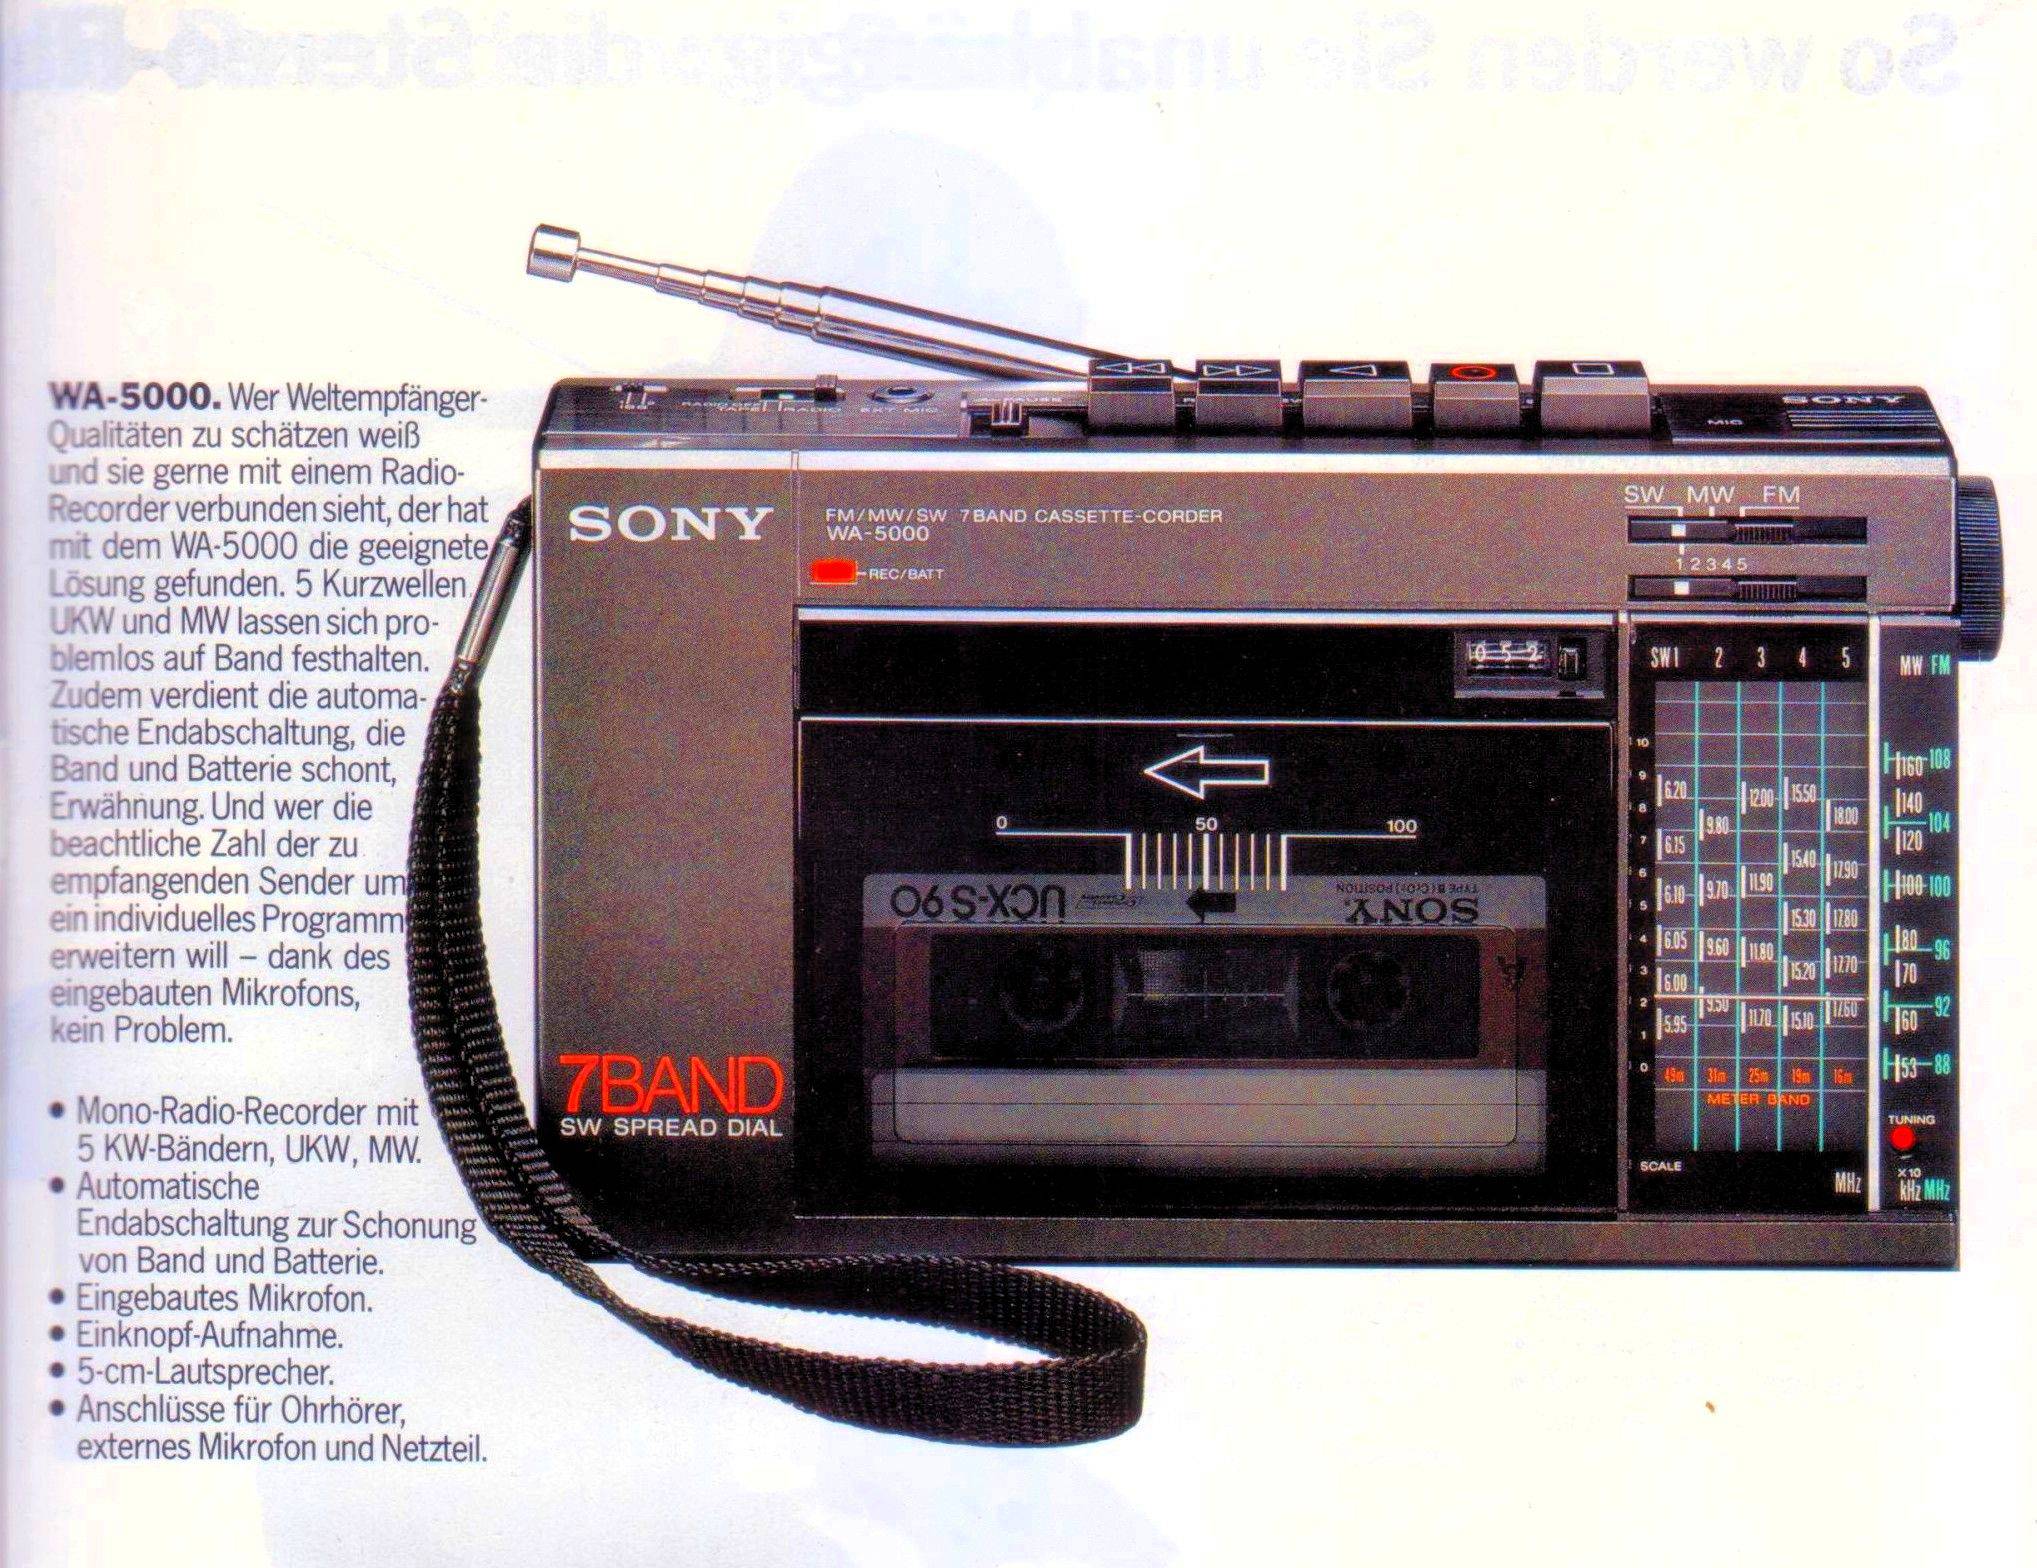 Sony WA-5000